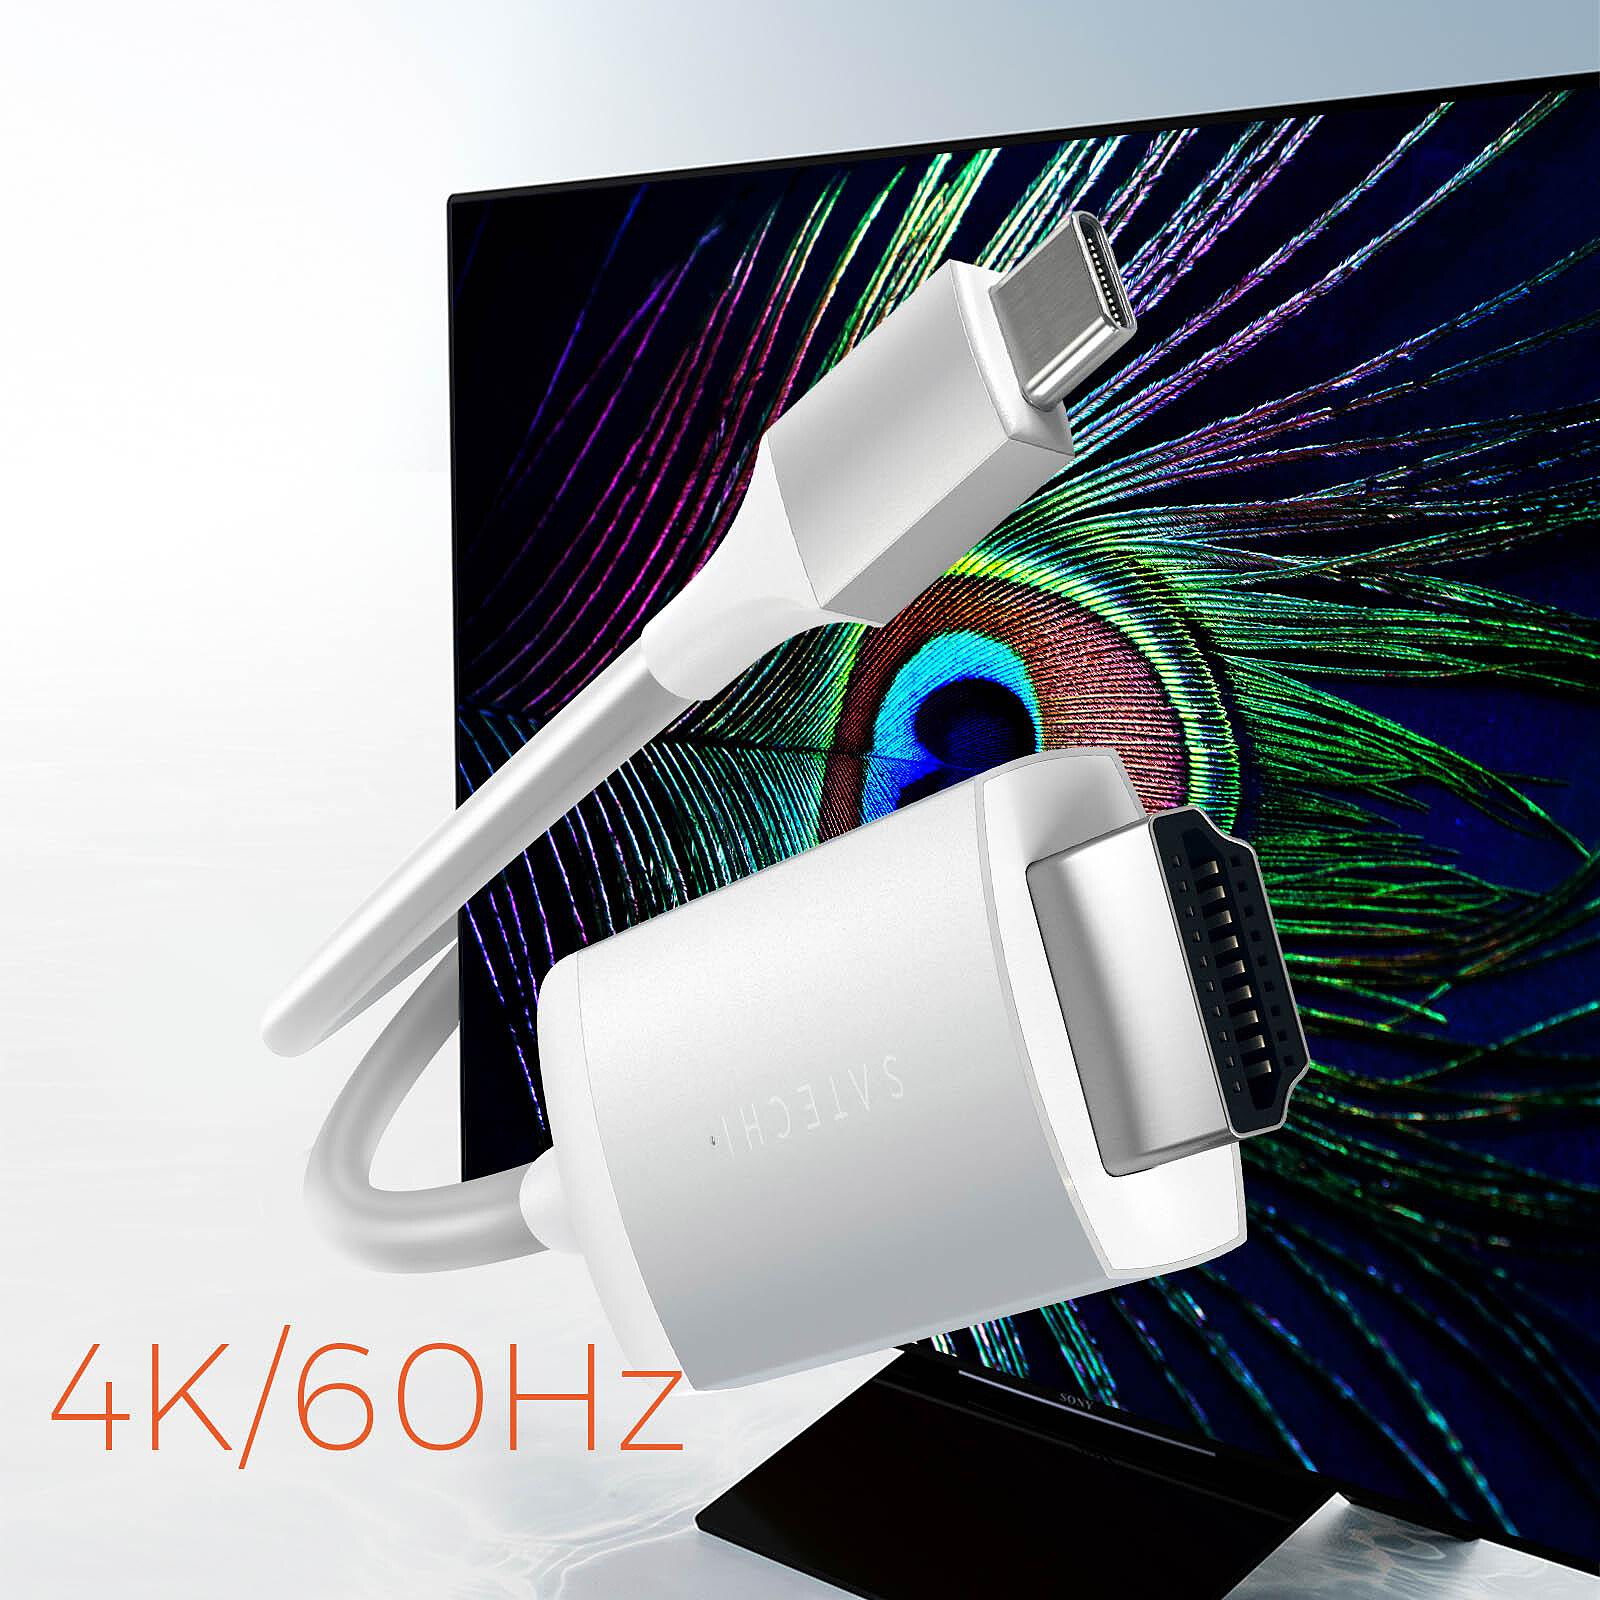 Satechi Câble USB C vers HDMI Résolution 4K 60Hz Longueur 175cm